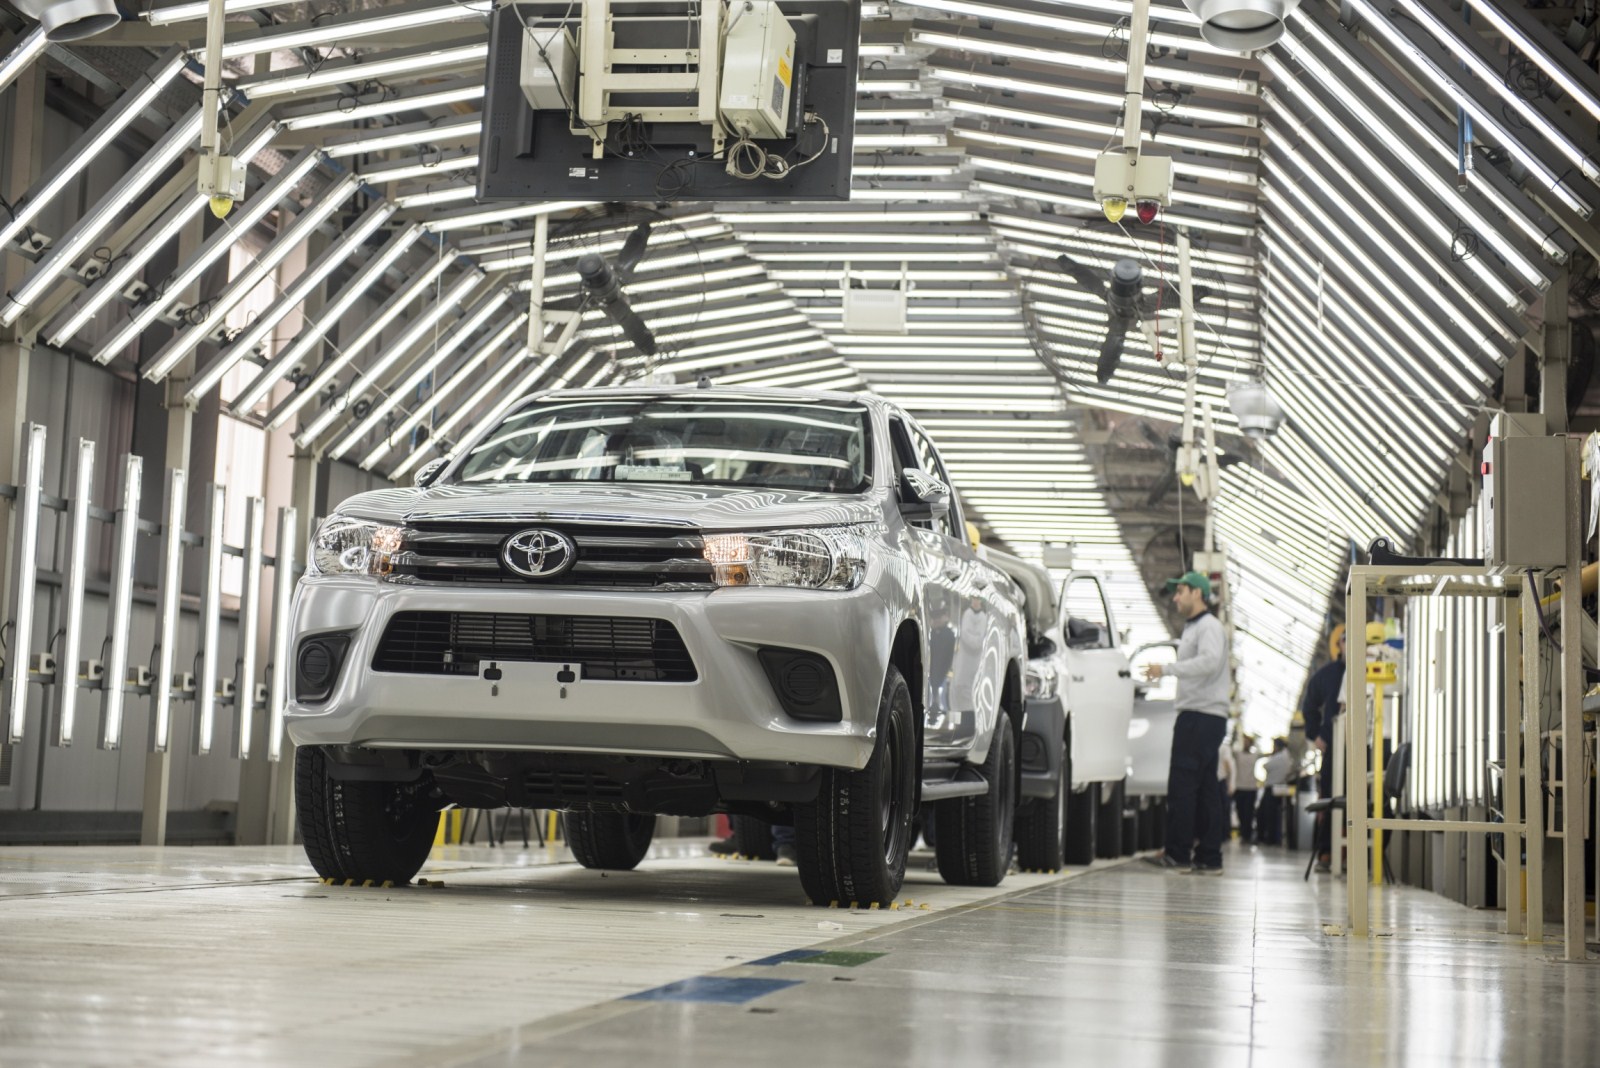  Toyota e YPF Luz acuerdan la provisión de energía 100% renovable para la planta de la automotriz en Zárate 